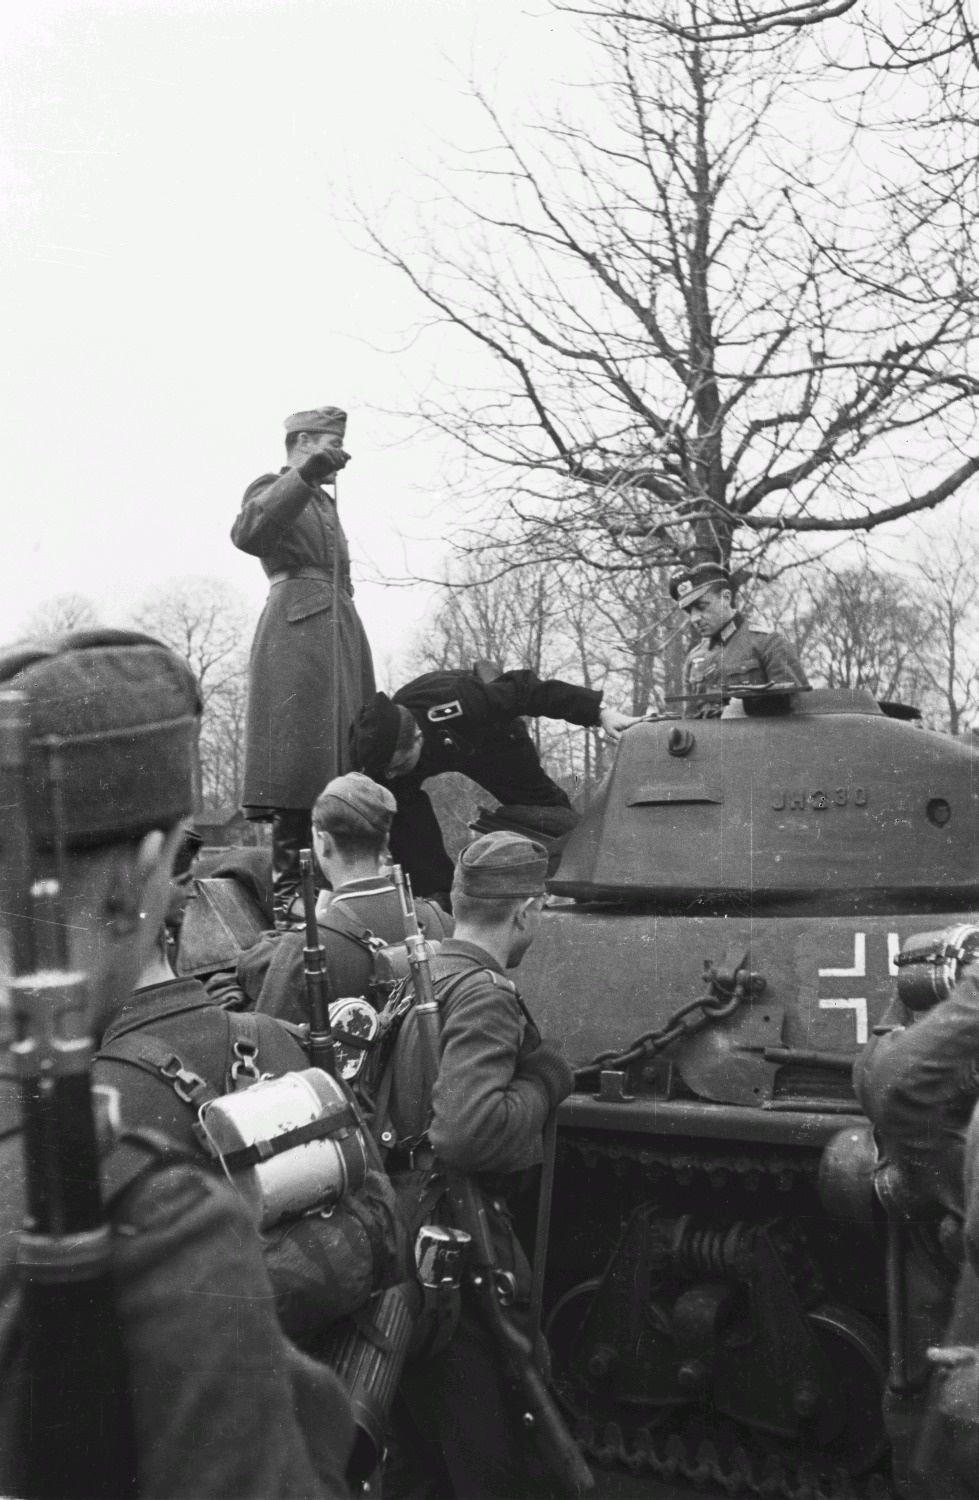 Города захваченные вермахтом. H39 Hotchkiss Tank в немецкой армии. Солдаты вермахта возле танка.